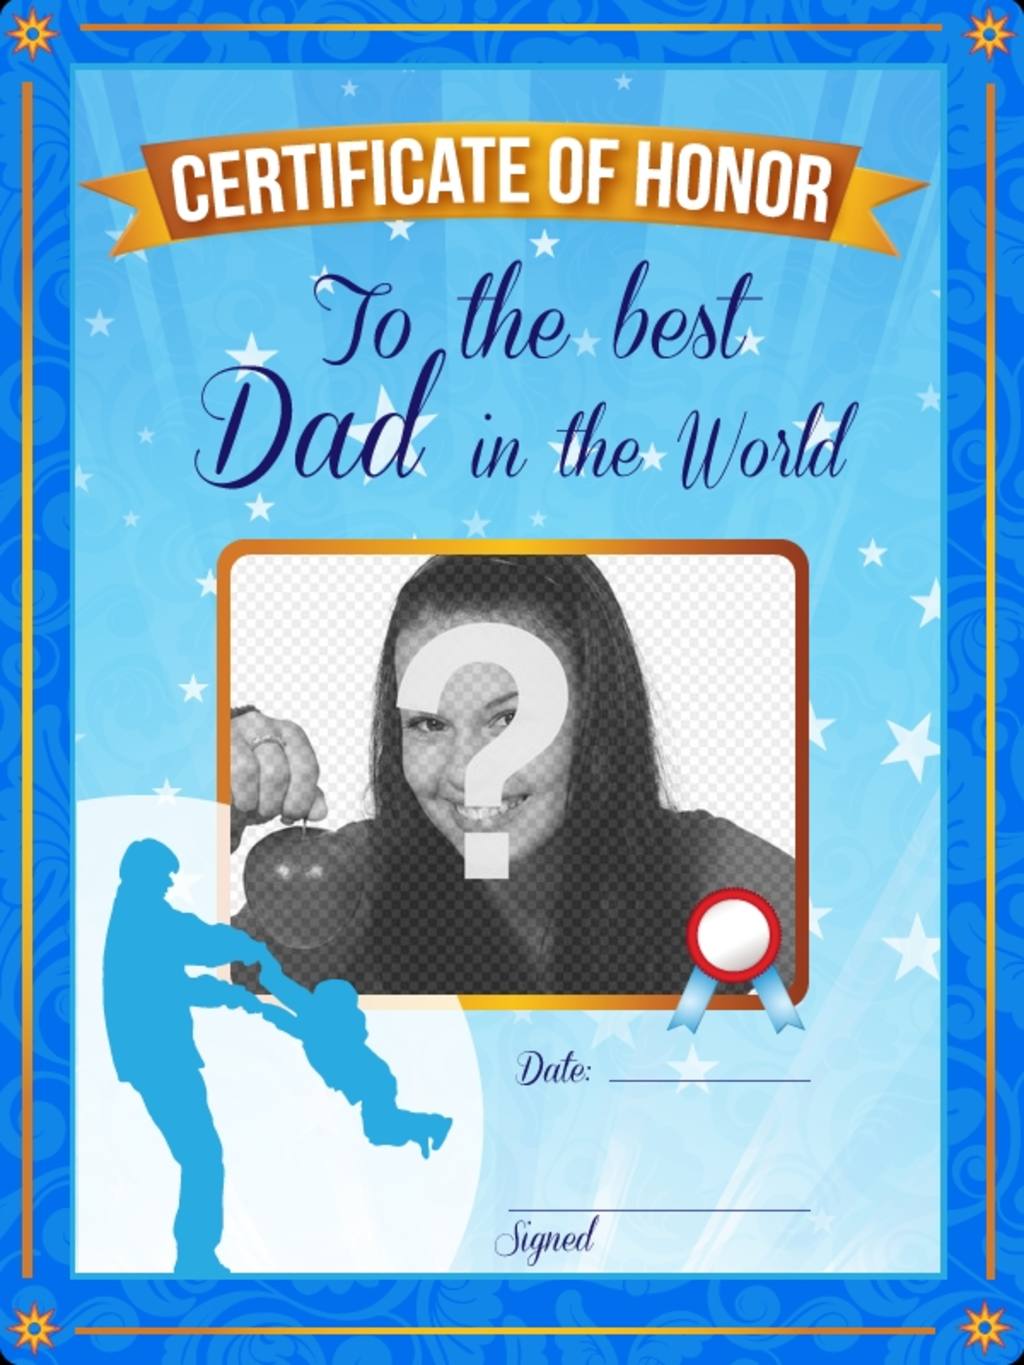 Certificat d'honneur pour le meilleur père au monde. Un certificat bleu personnalisé avec une photo et un..